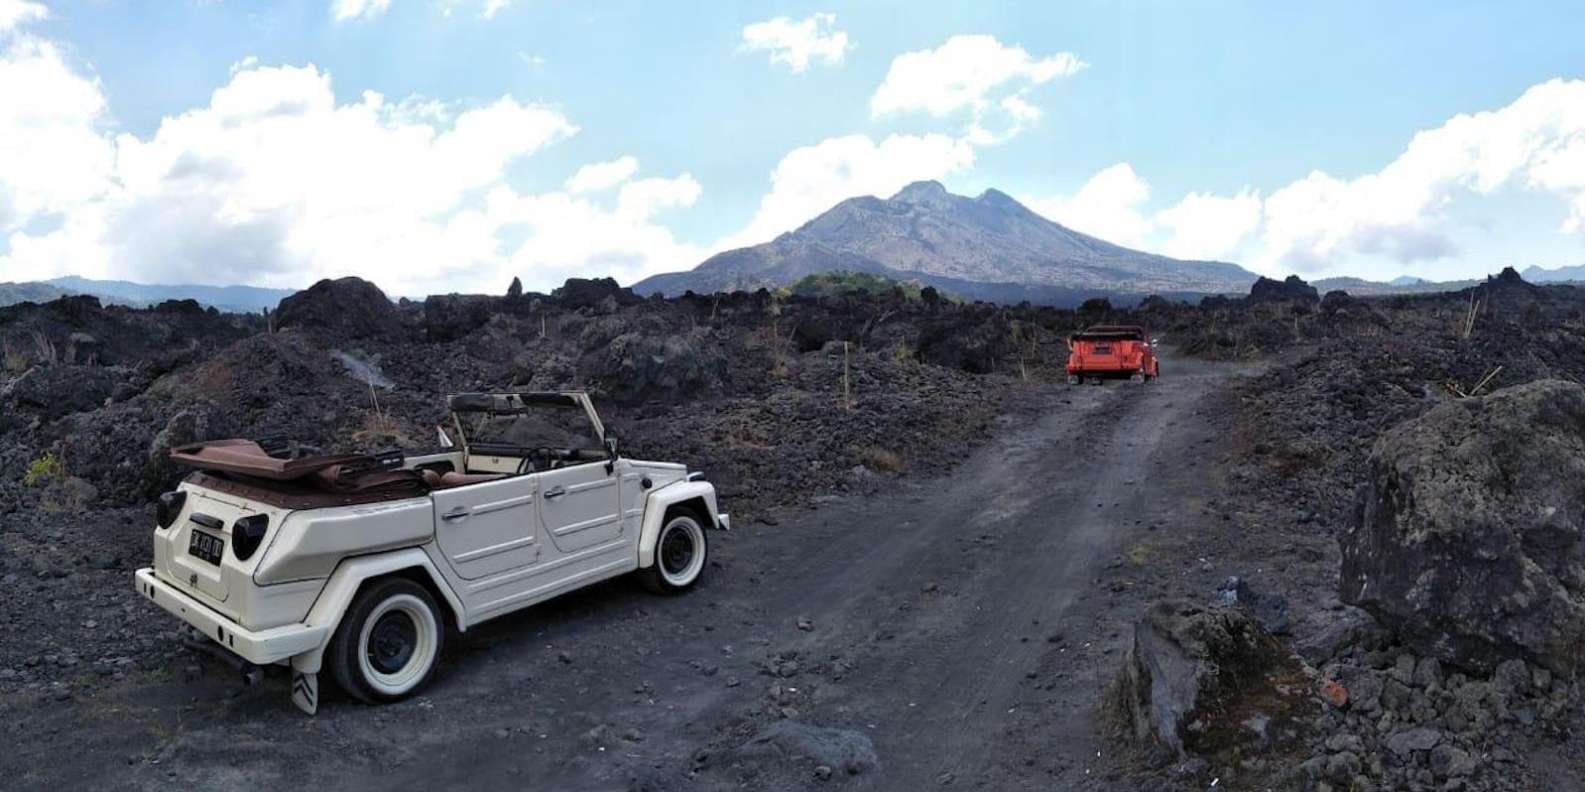 016-mount-batur-volkswagen-jeep-volcano-safari-5-t187437.jpg